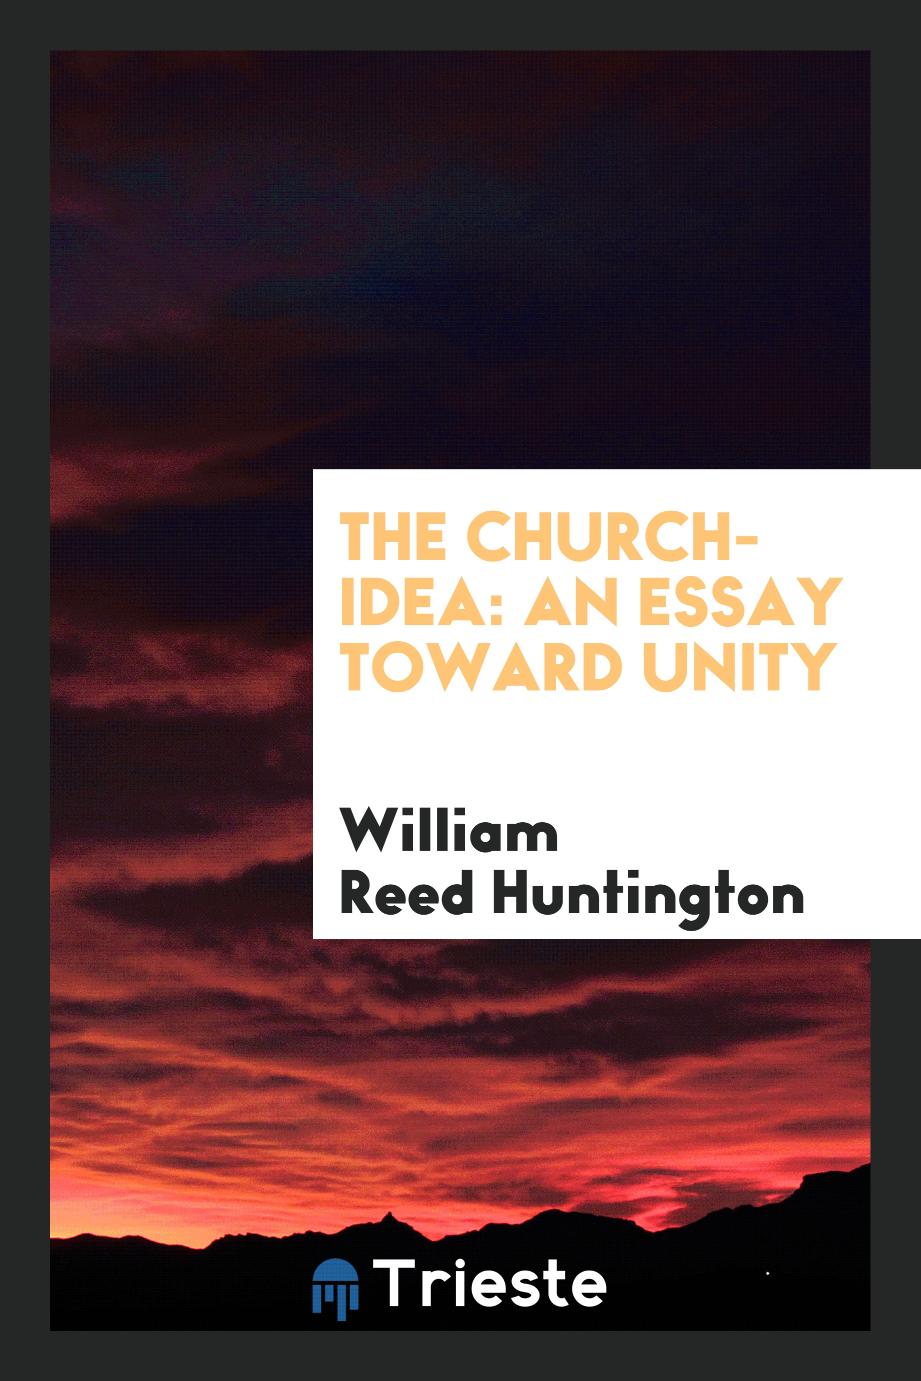 The church-idea: an essay toward unity